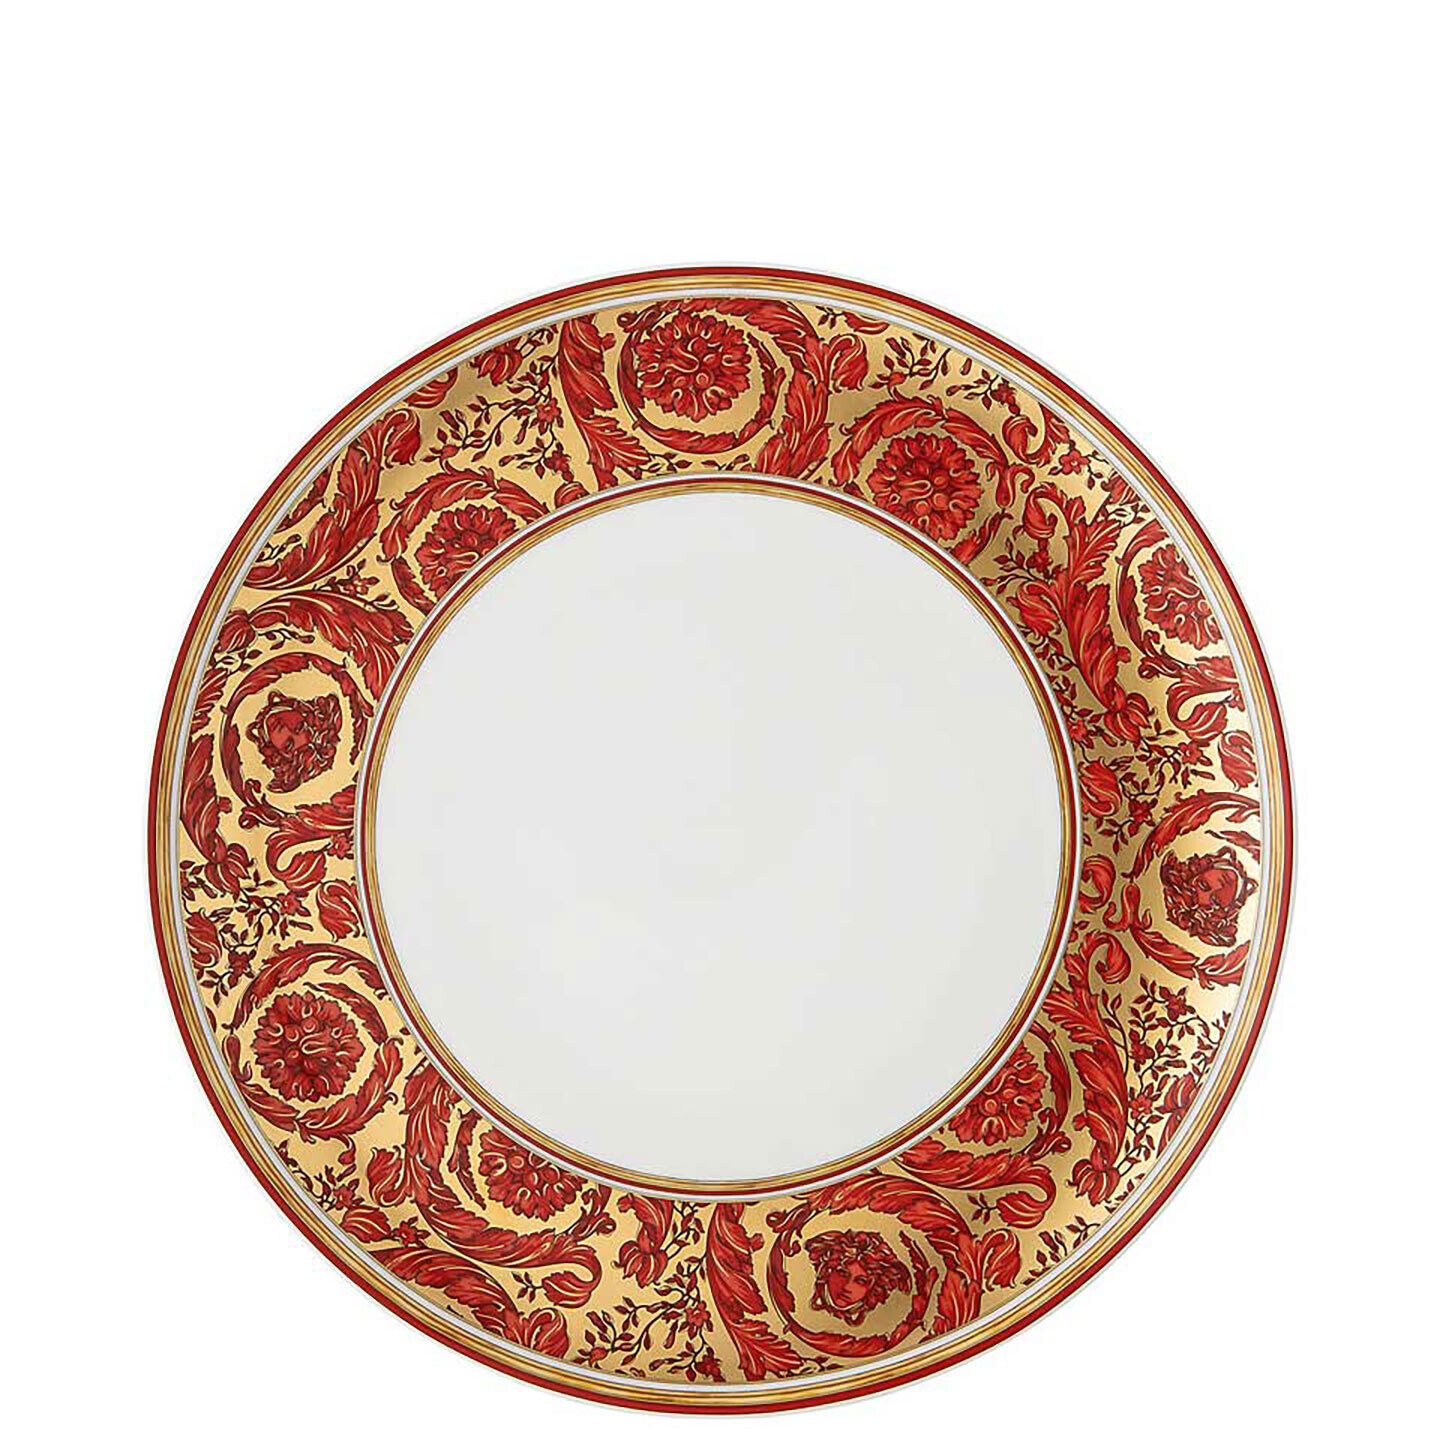 Versace Medusa Garland Red Dinner Plate 19335-409958-10229